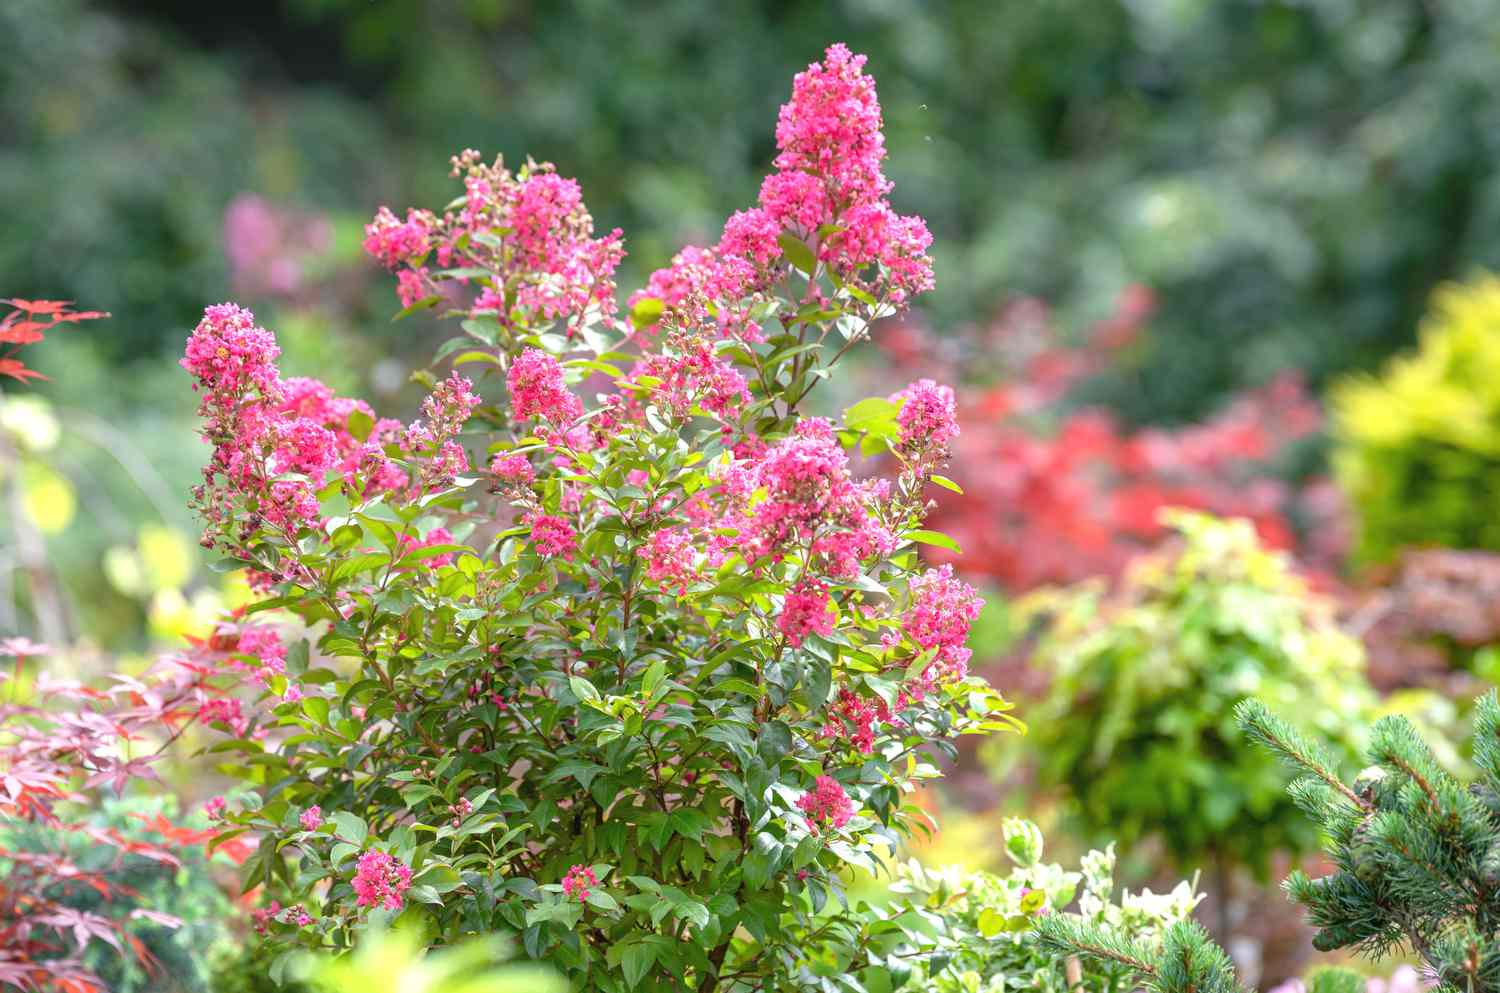 Árvore de murta crepe com cachos de flores rosa na extremidade dos galhos